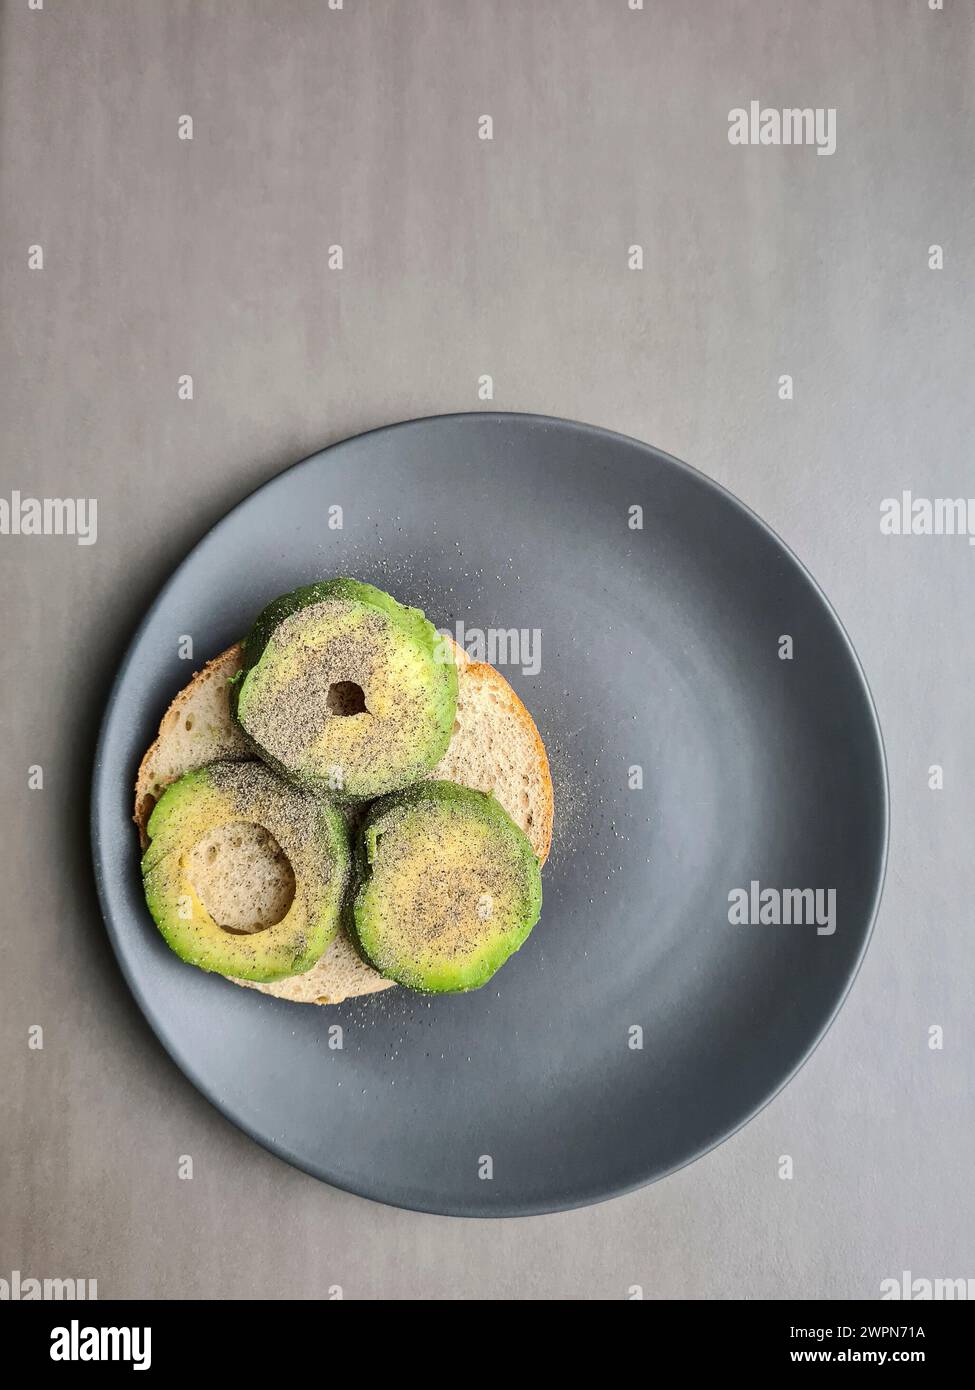 Eine in Scheiben geschnittene Avocado, die mit Pfeffer gewürzt wurde, liegt auf einem halben Brötchen auf einem grauen Teller vor grauem Hintergrund Stockfoto